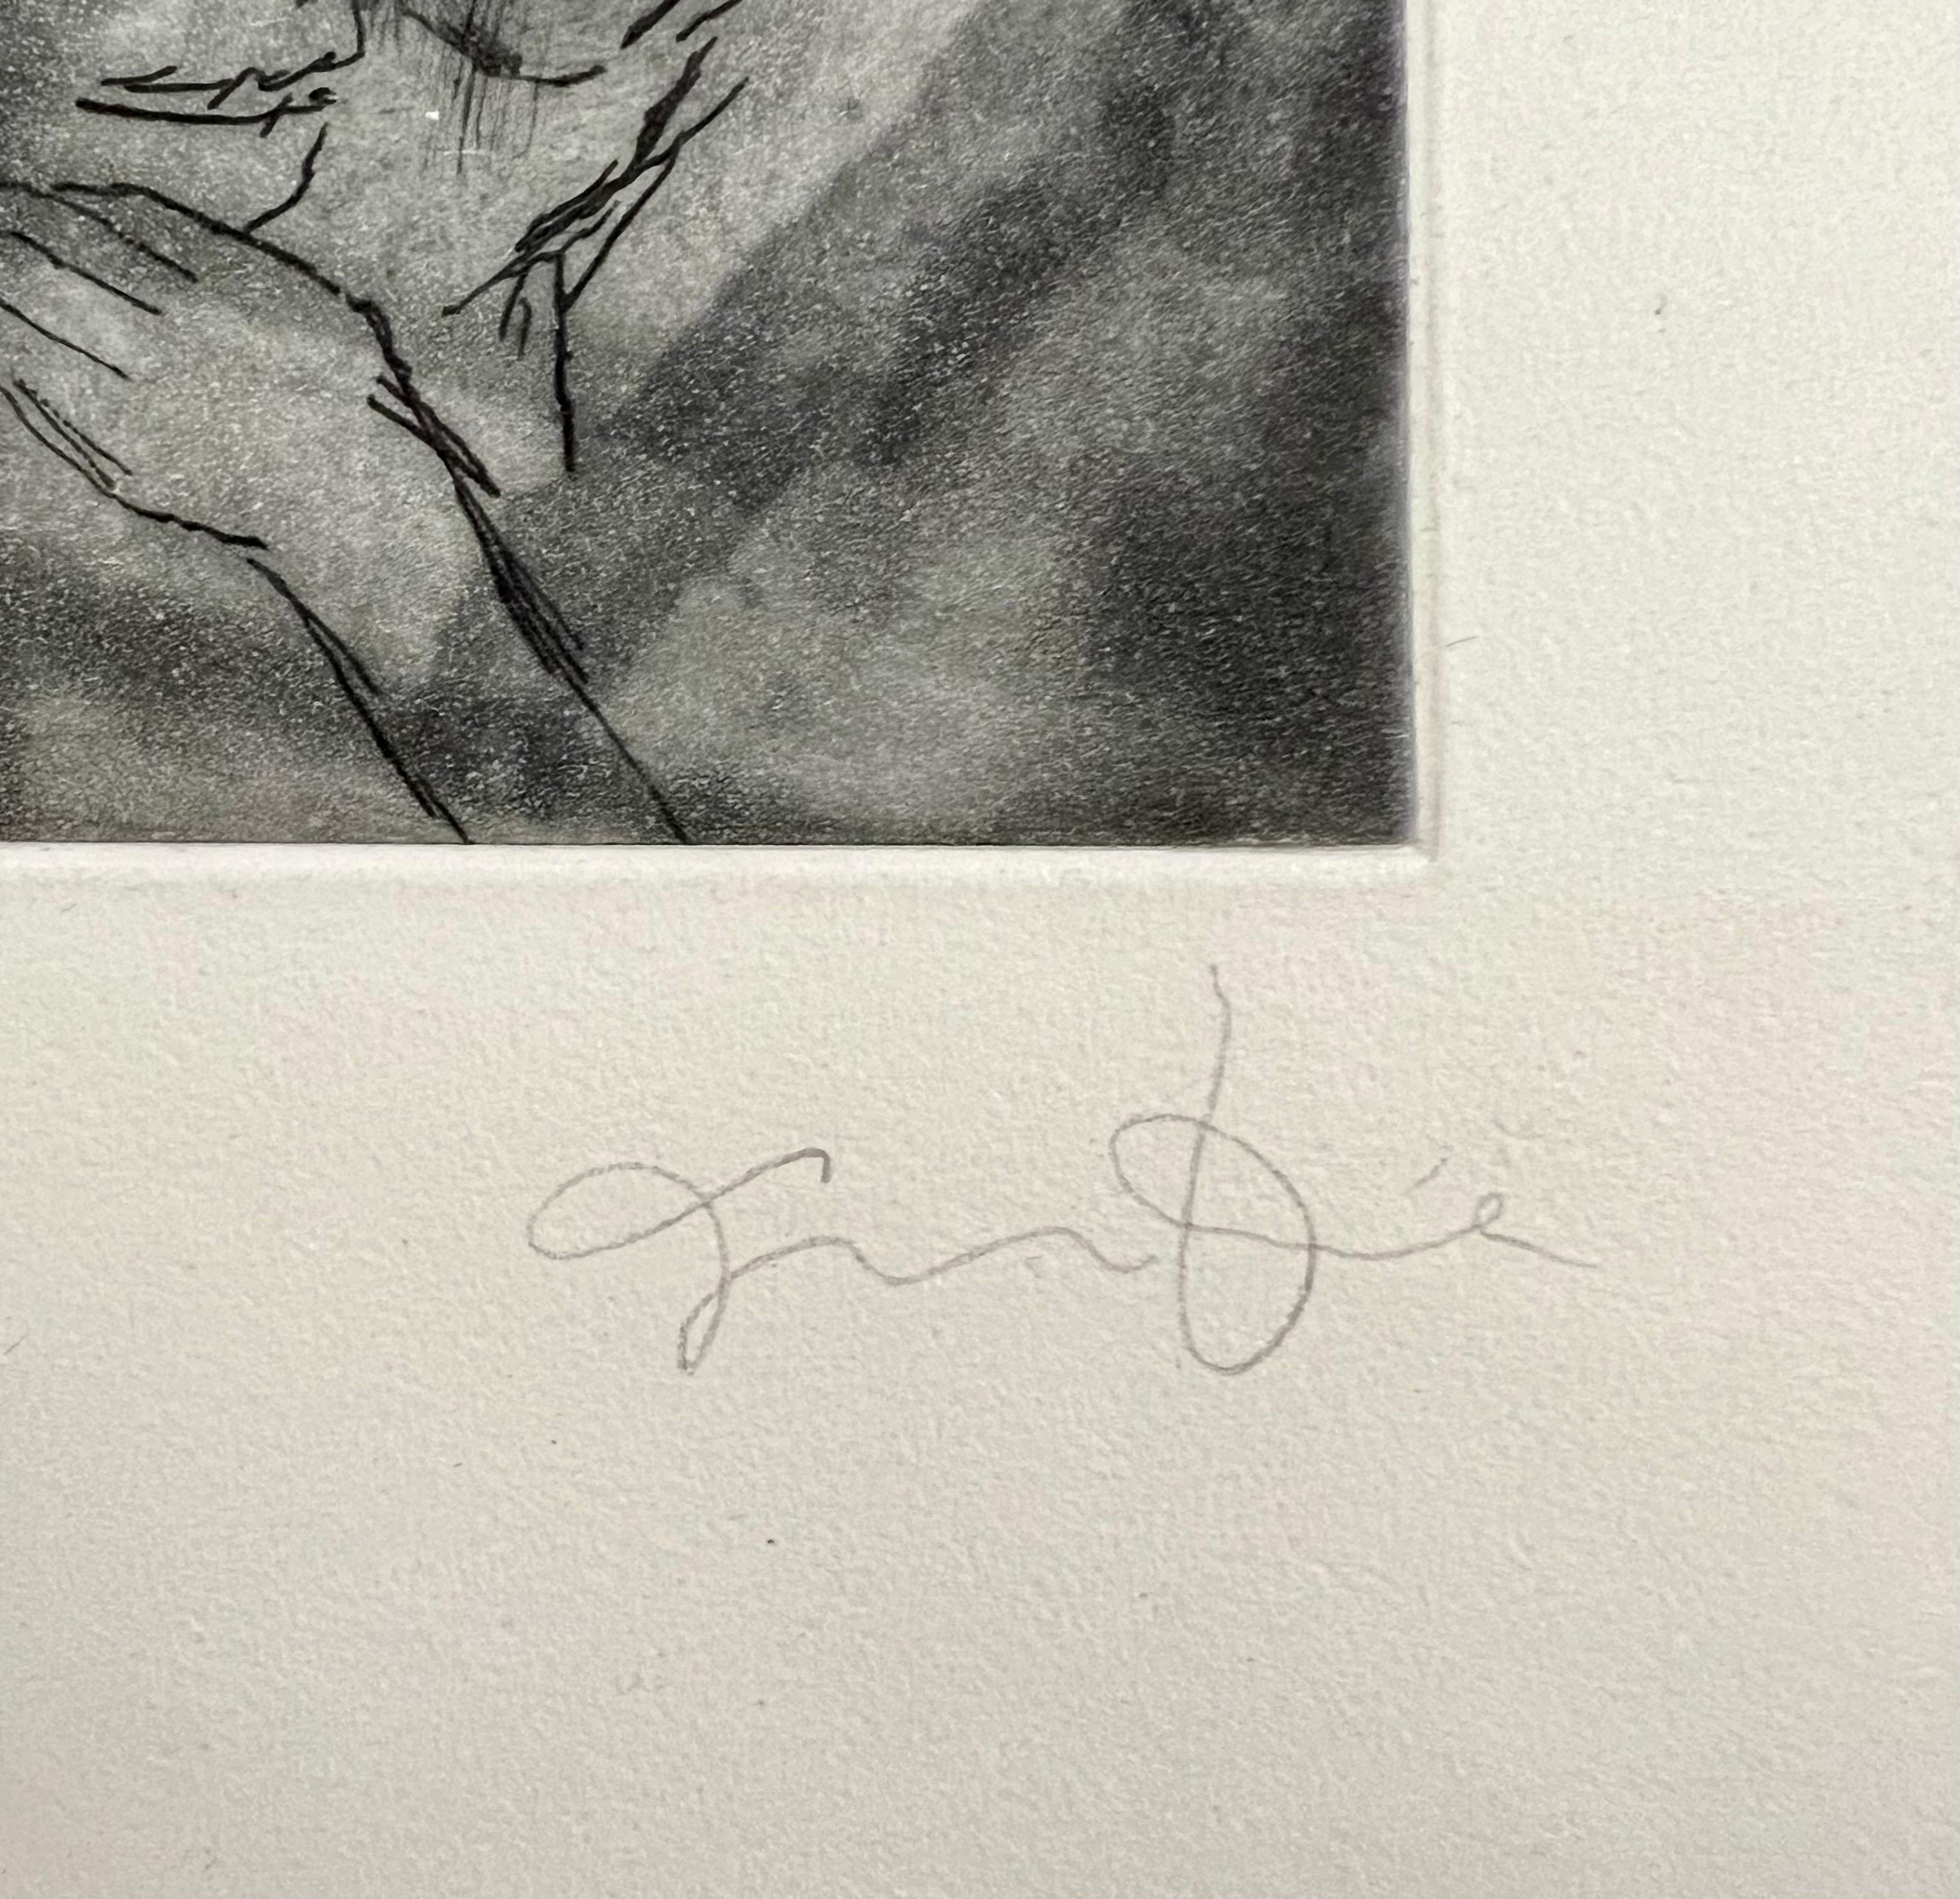 Jim Dine (Amerikaner, geb. 1935) 
Radierung mit der Darstellung eines Hundes oder Wolfs
Veröffentlicht von Enitharmon Press für Whitman College, London 1999
Handsigniert mit Bleistift unten rechts. Maße 9